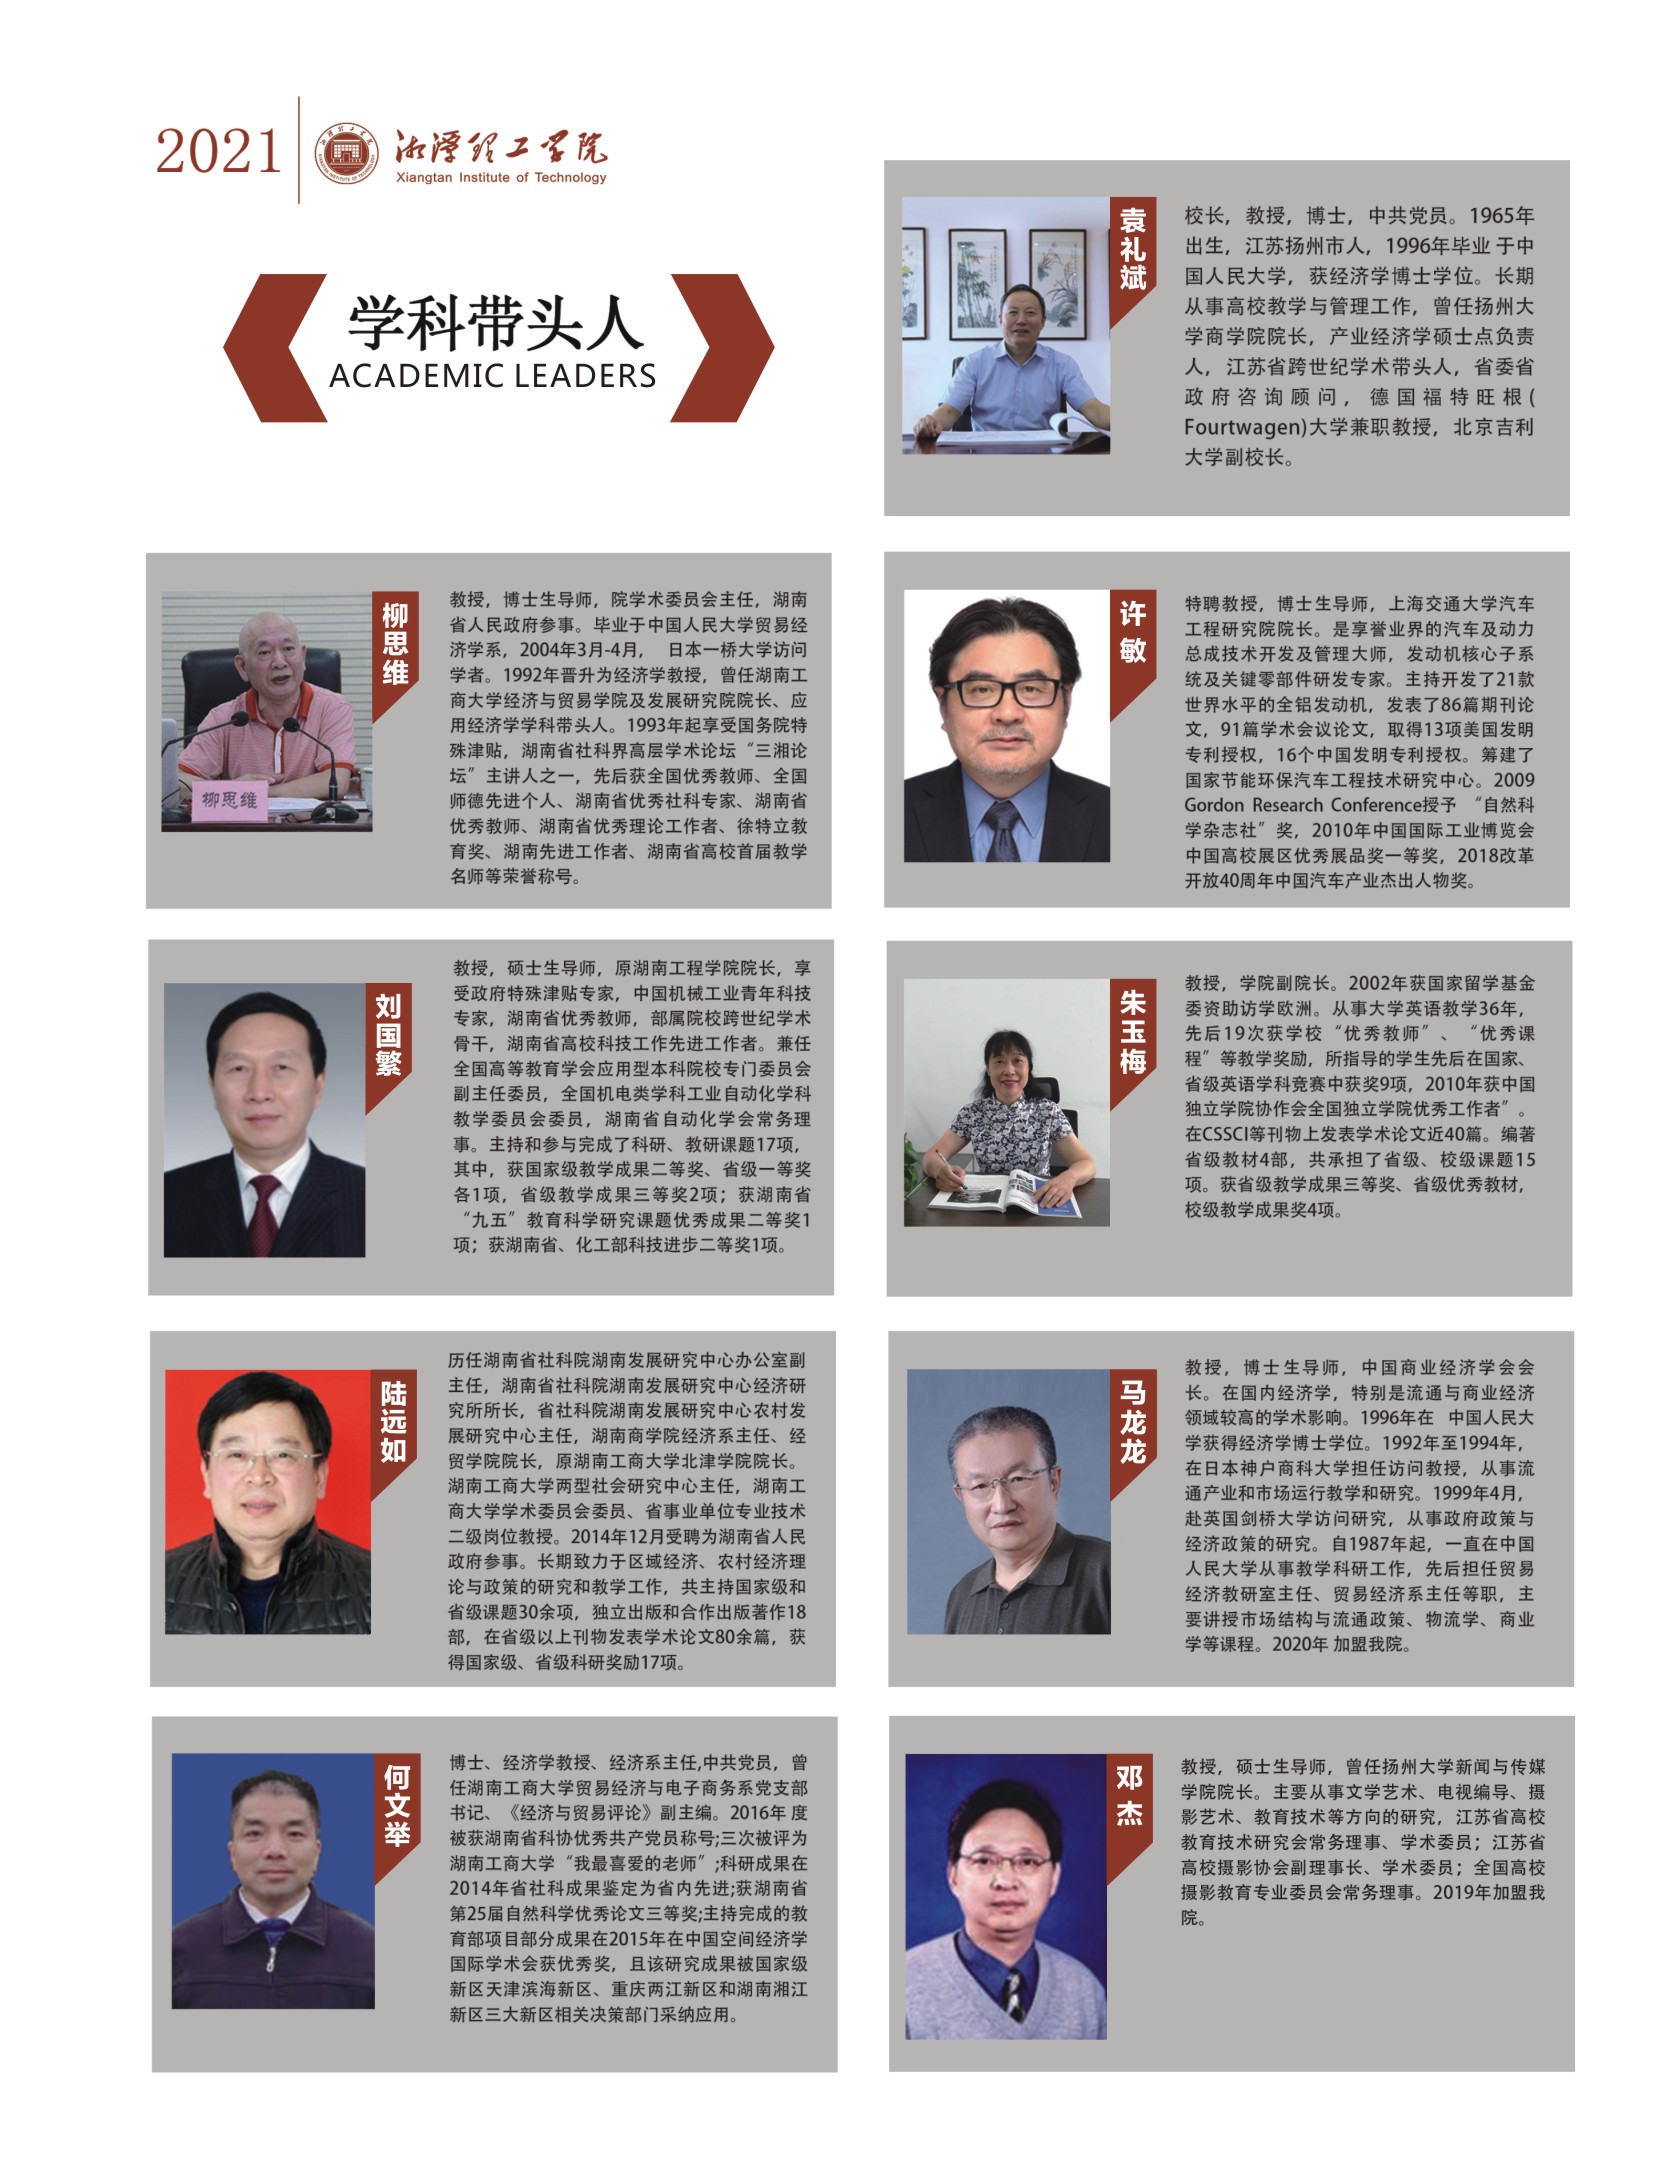 湘潭理工学院－2021年招生简章